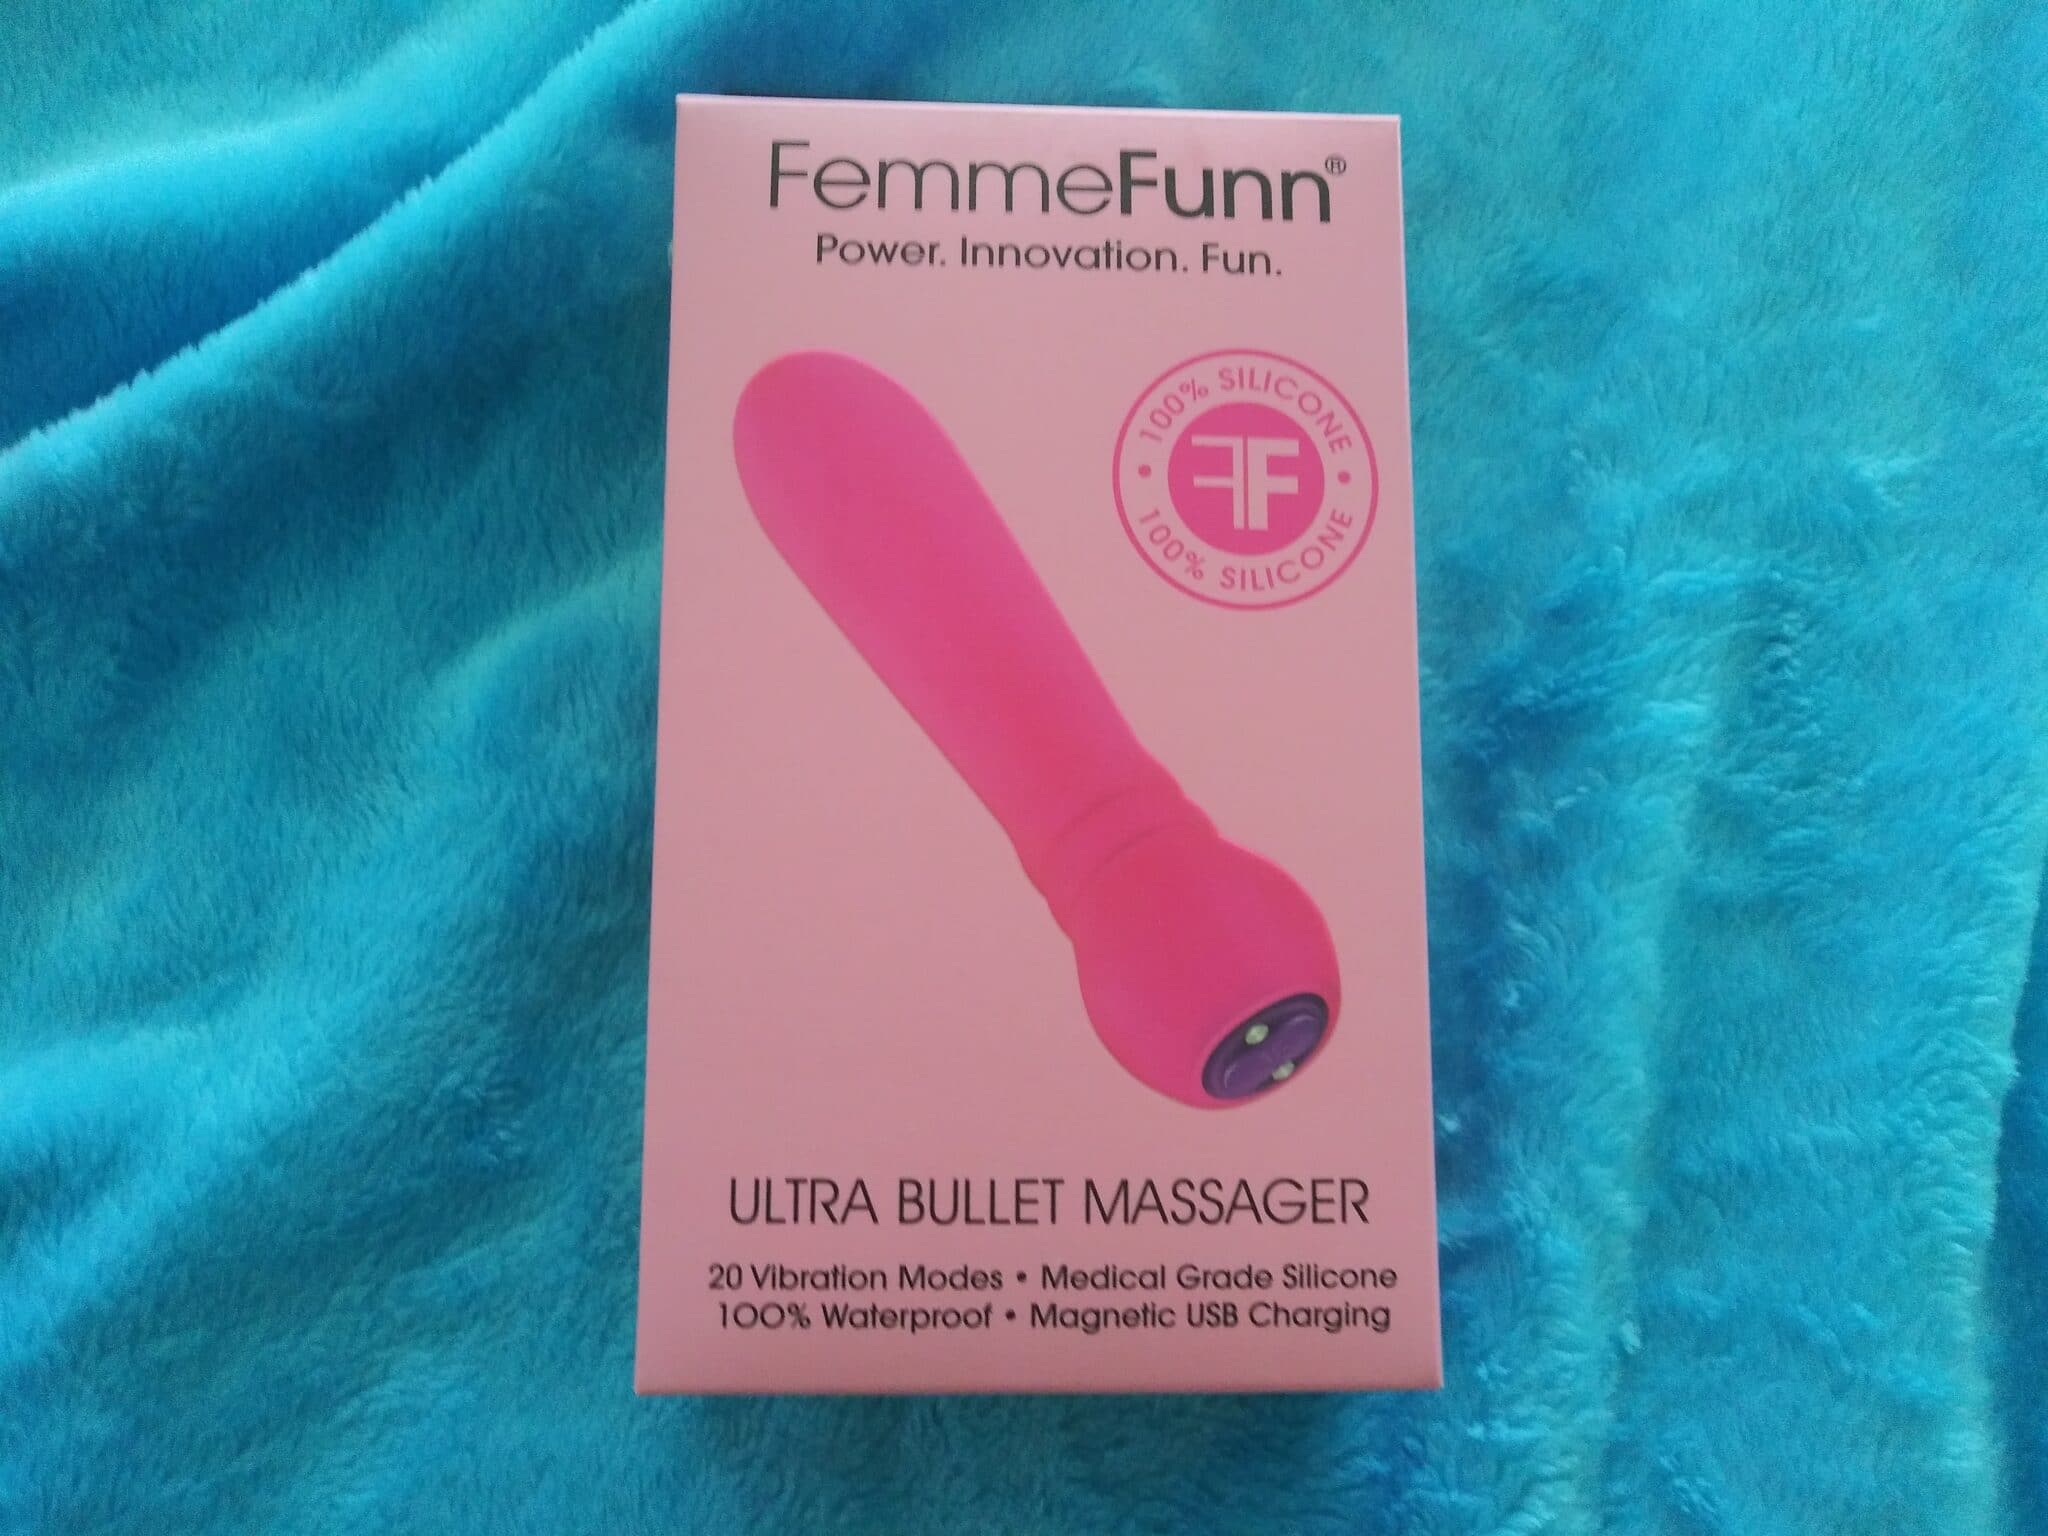 FemmeFunn Ultra Bullet Massager The FemmeFunn Ultra Bullet Massager’s Packaging: Hit or Miss?